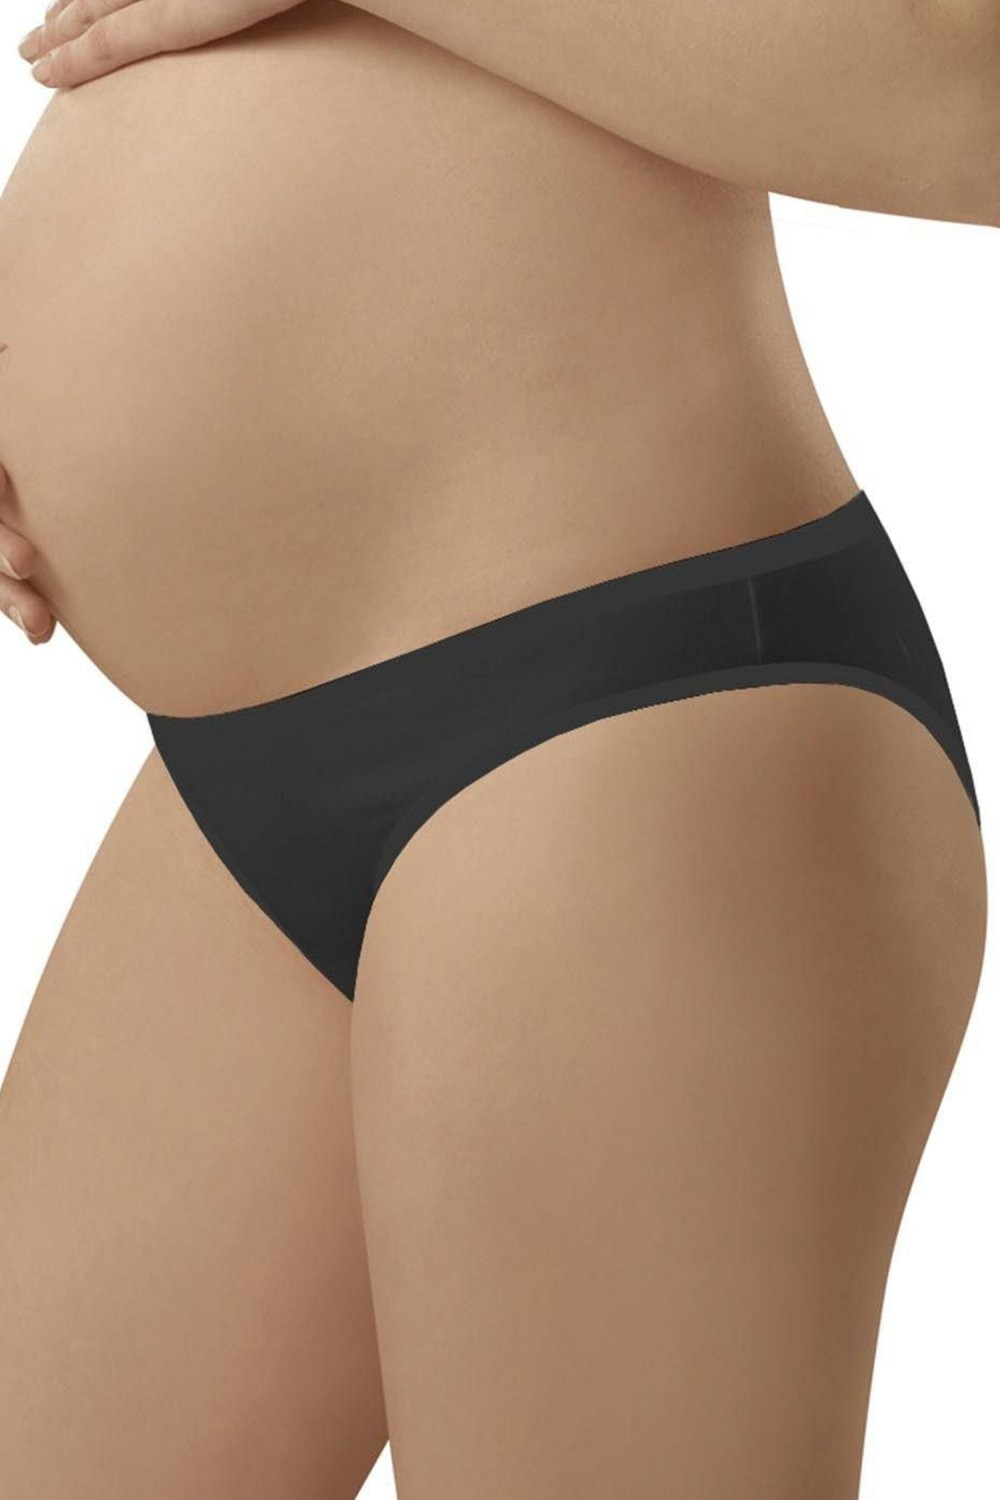 Dámské těhotenské kalhotky Mama mini black - ITALIAN FASHION černá XL